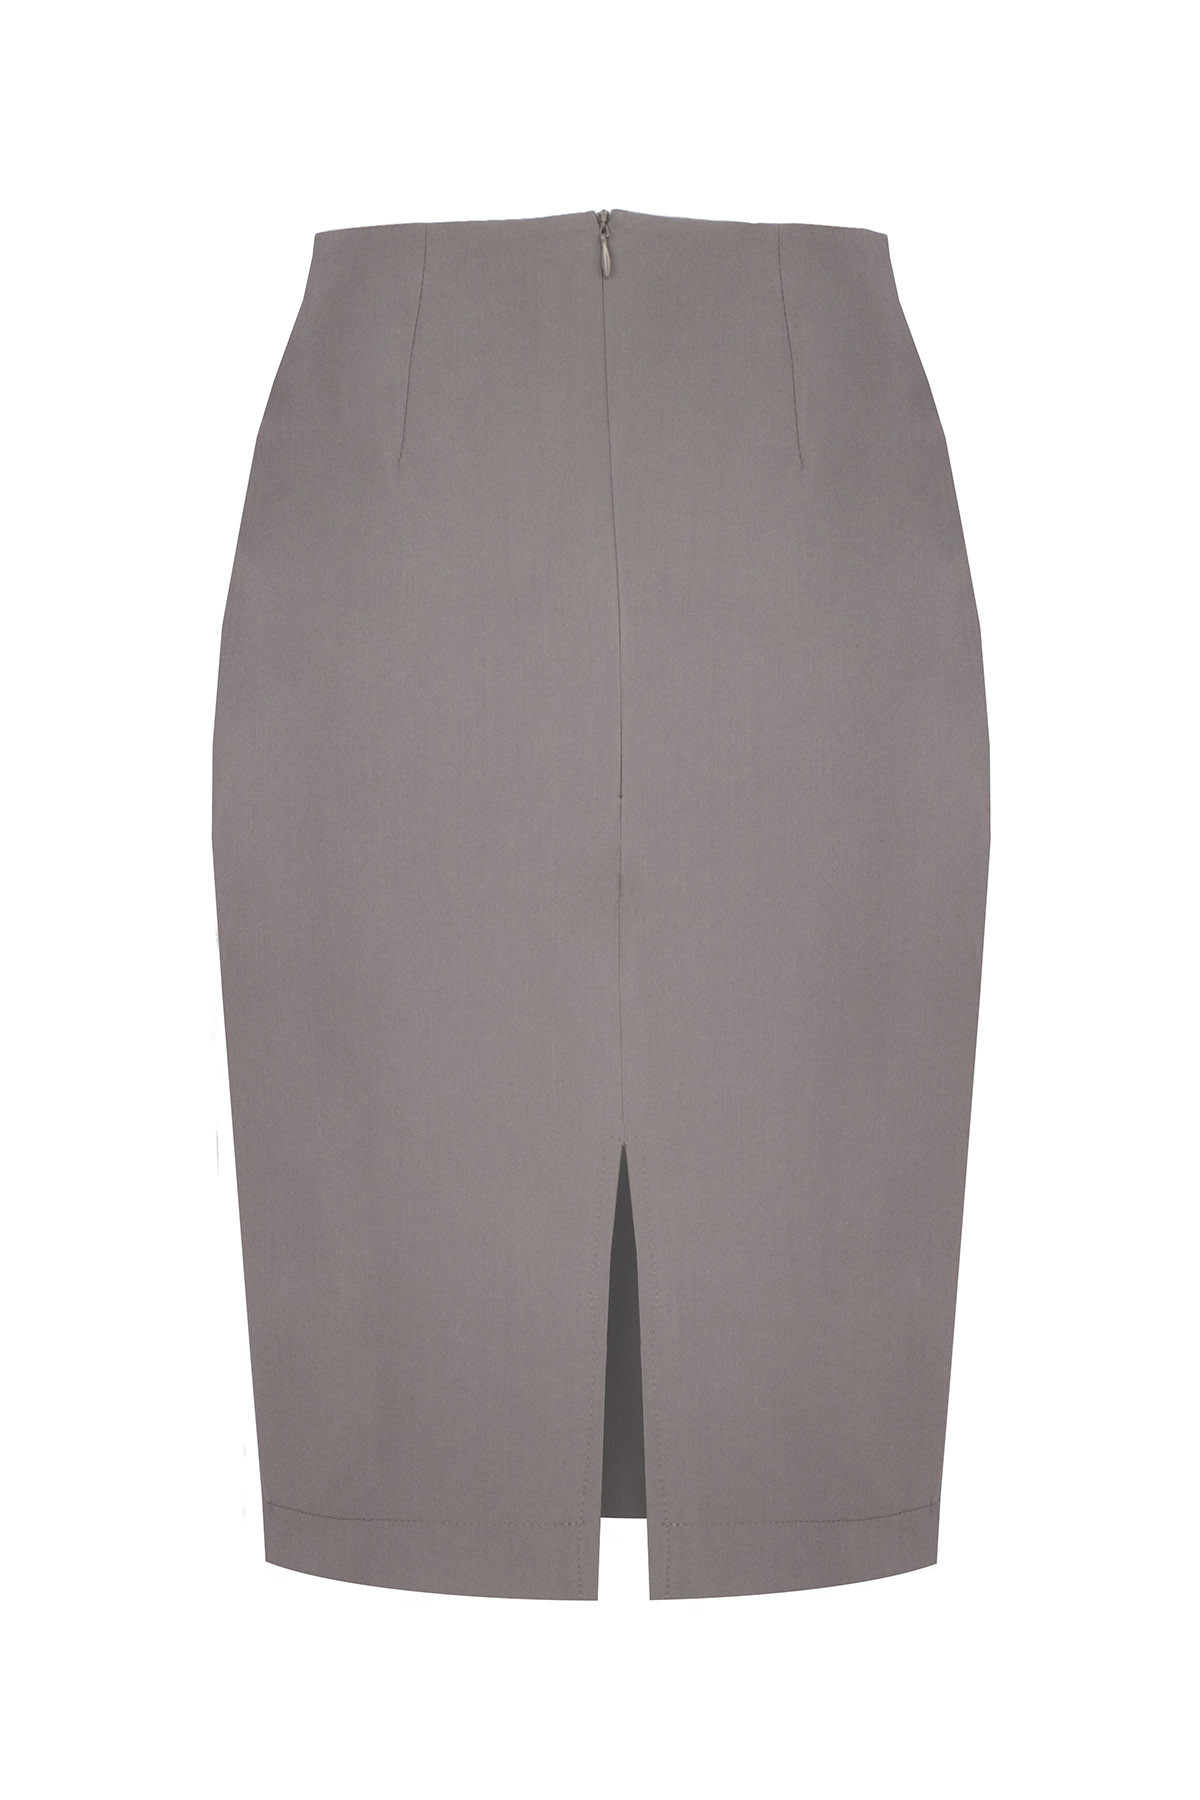 Dámská sukně model 17976151 S - Figl Velikost: L, Barvy: šedá